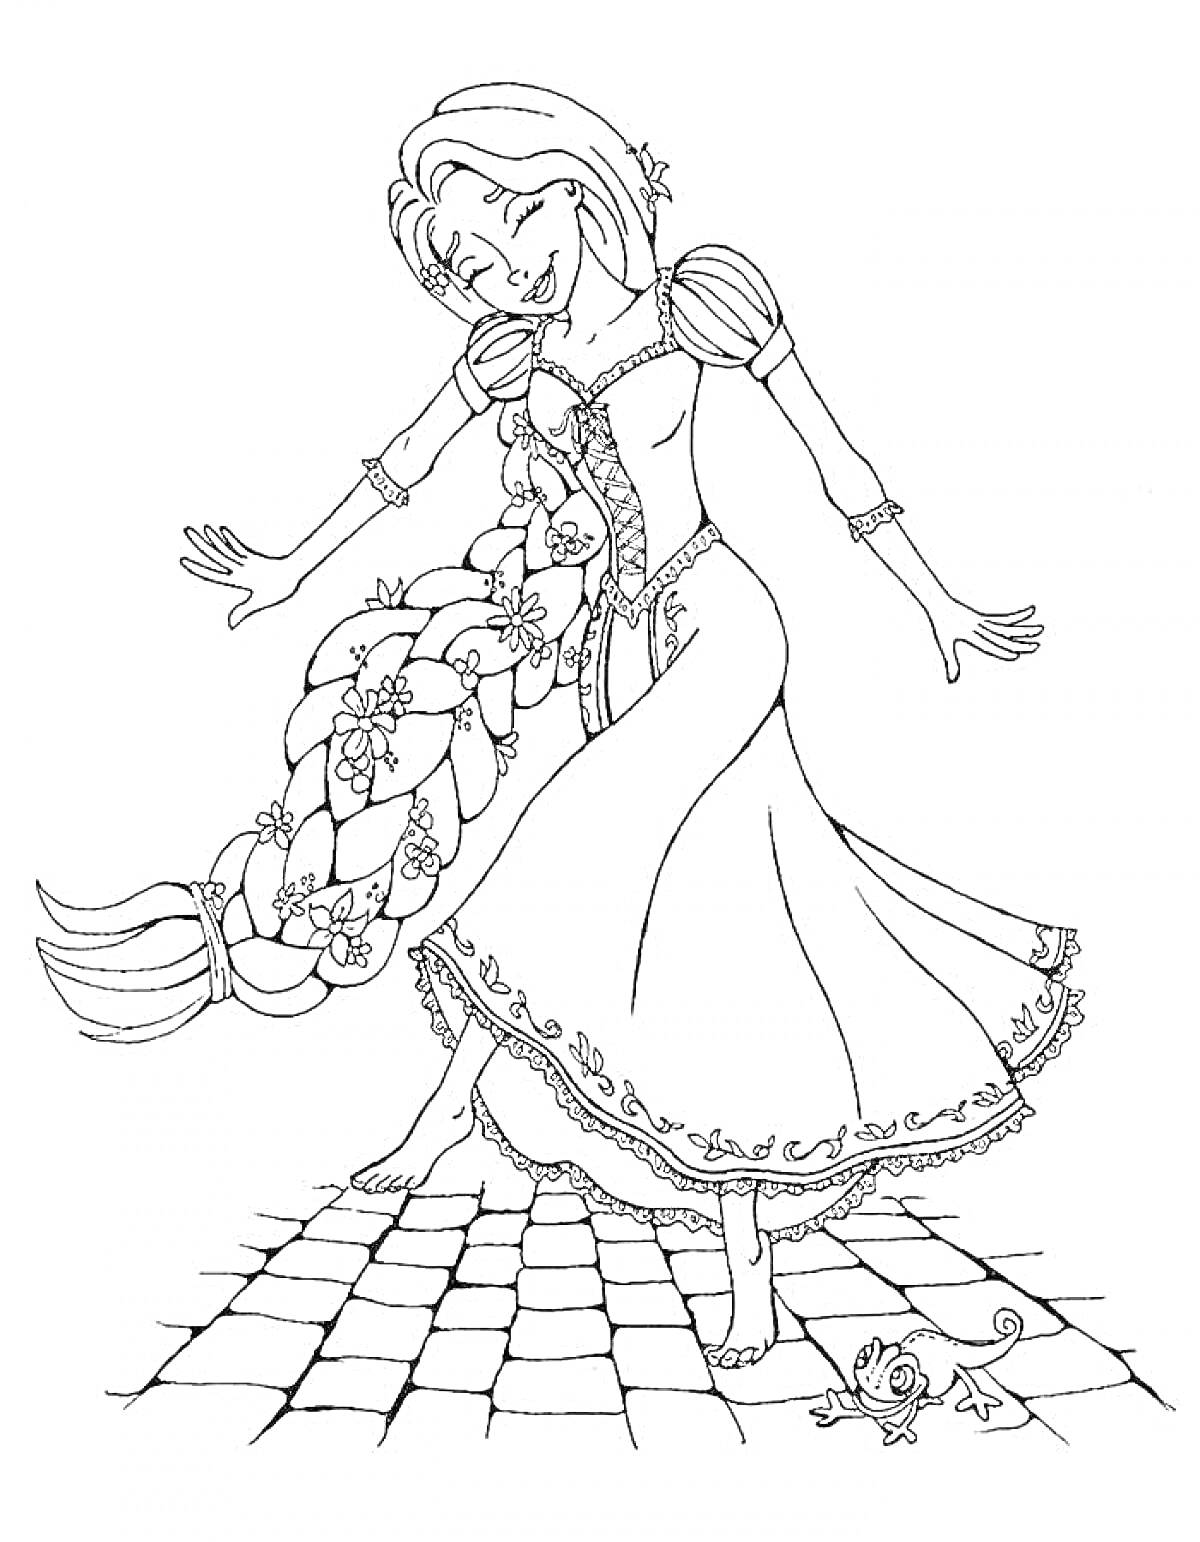 Девочка с длинной косой, в платье, на плиточной поверхности, рядом с мышкой